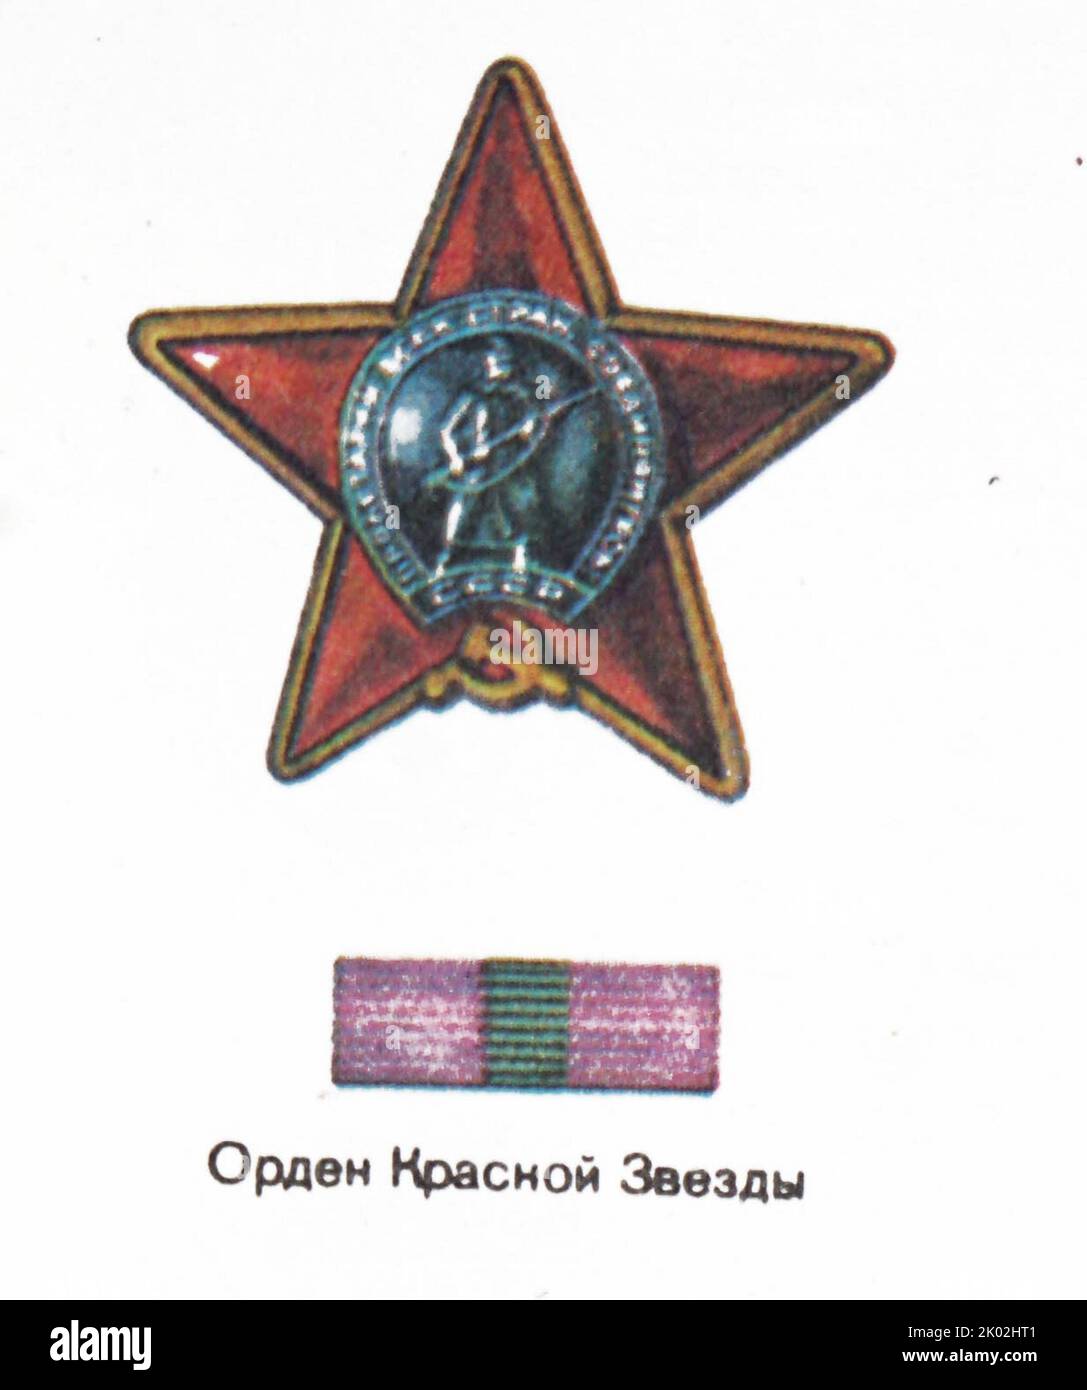 L'Ordine della Stella Rossa; una decorazione militare dell'Unione Sovietica. Fu istituito con decreto del Presidio del Soviet Supremo dell'URSS del 6 aprile 1930 Foto Stock